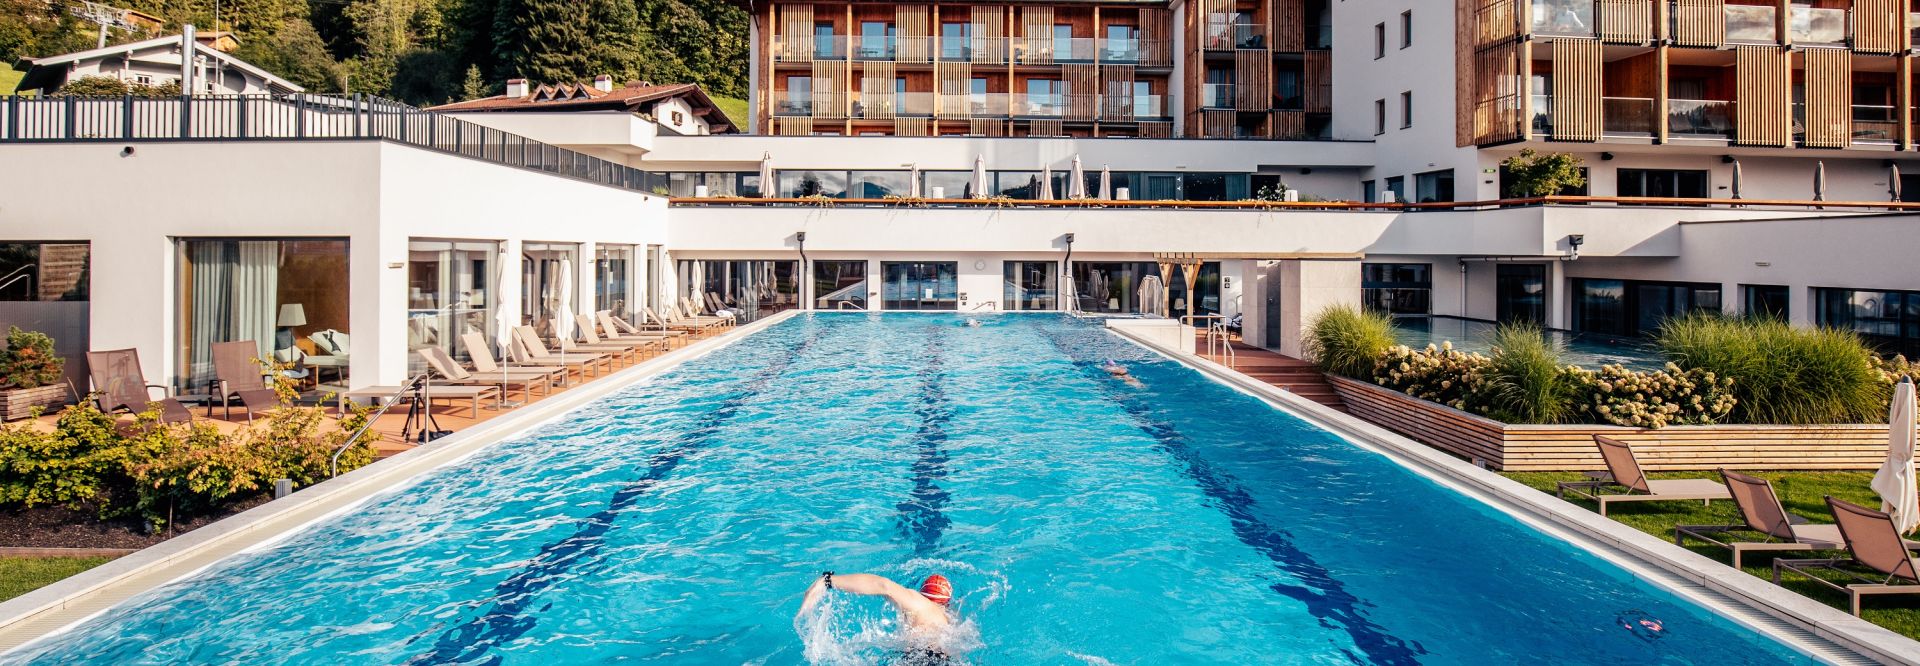 Bahnen schwimmen im hoteleigenen Pool (c) Daniel Waschnig  (Das Hohe Save Sportresort)